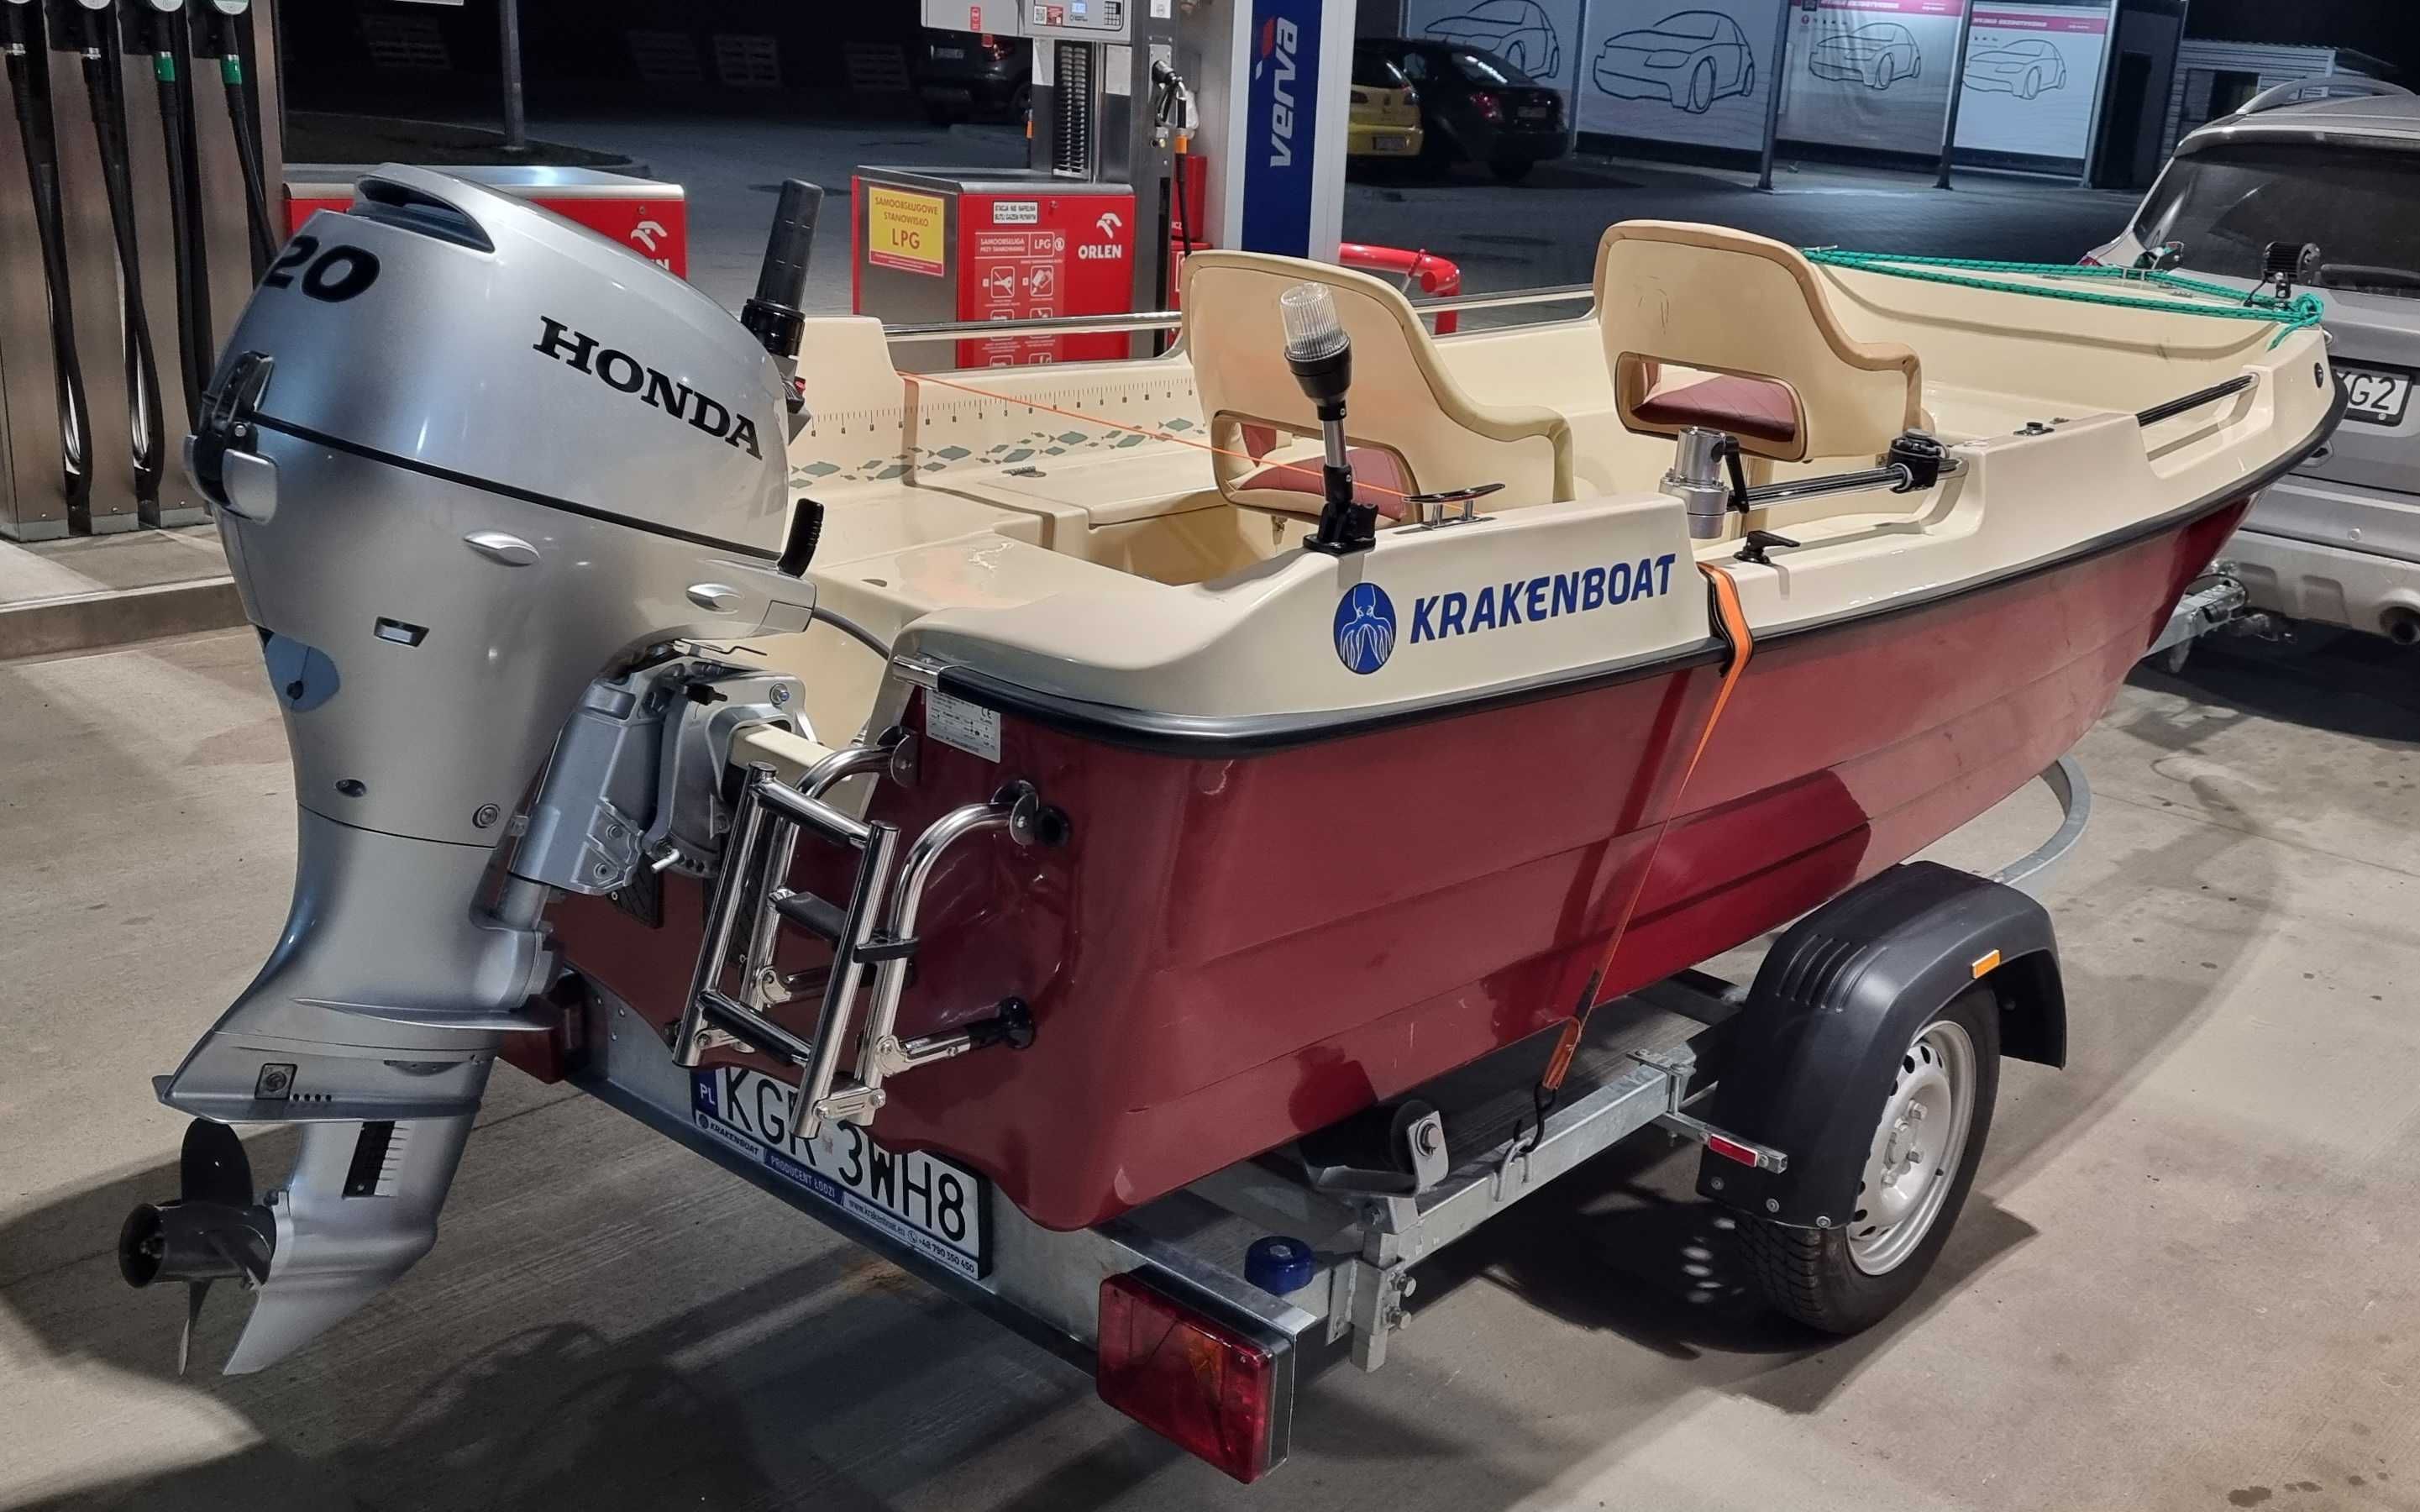 Sprzedam Łódź KrakenBoat 380 wraz z bogatym wyposażeniem.